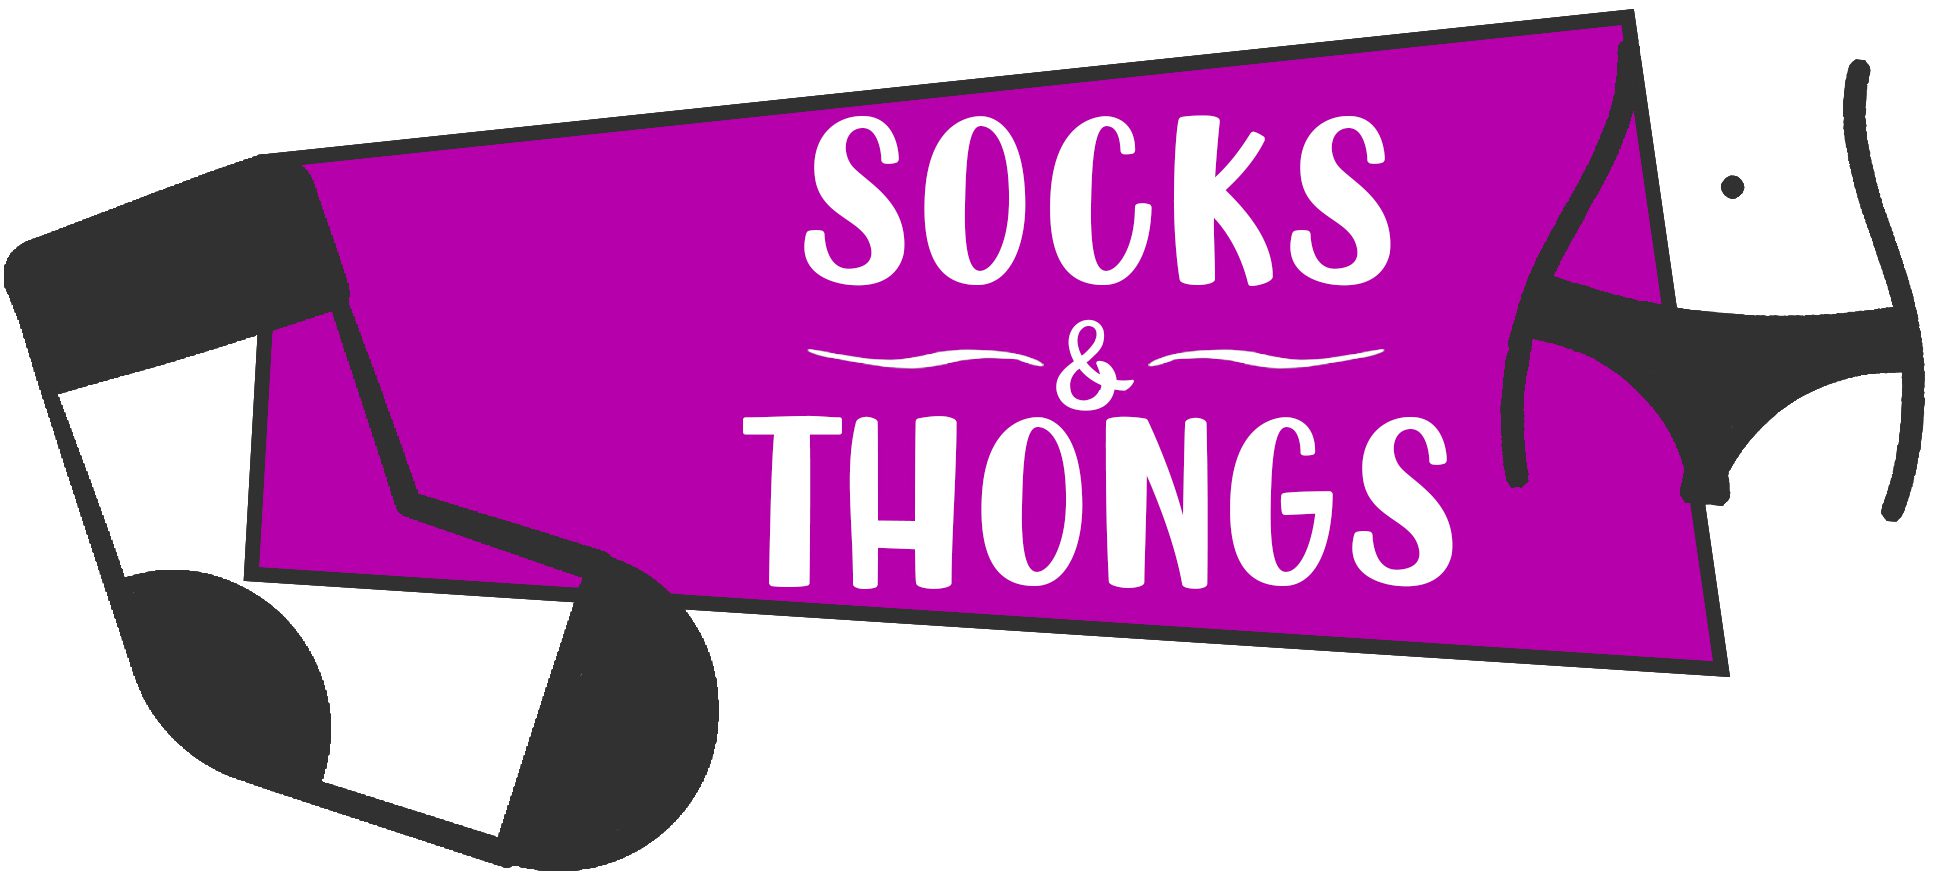 Socks & Thongs